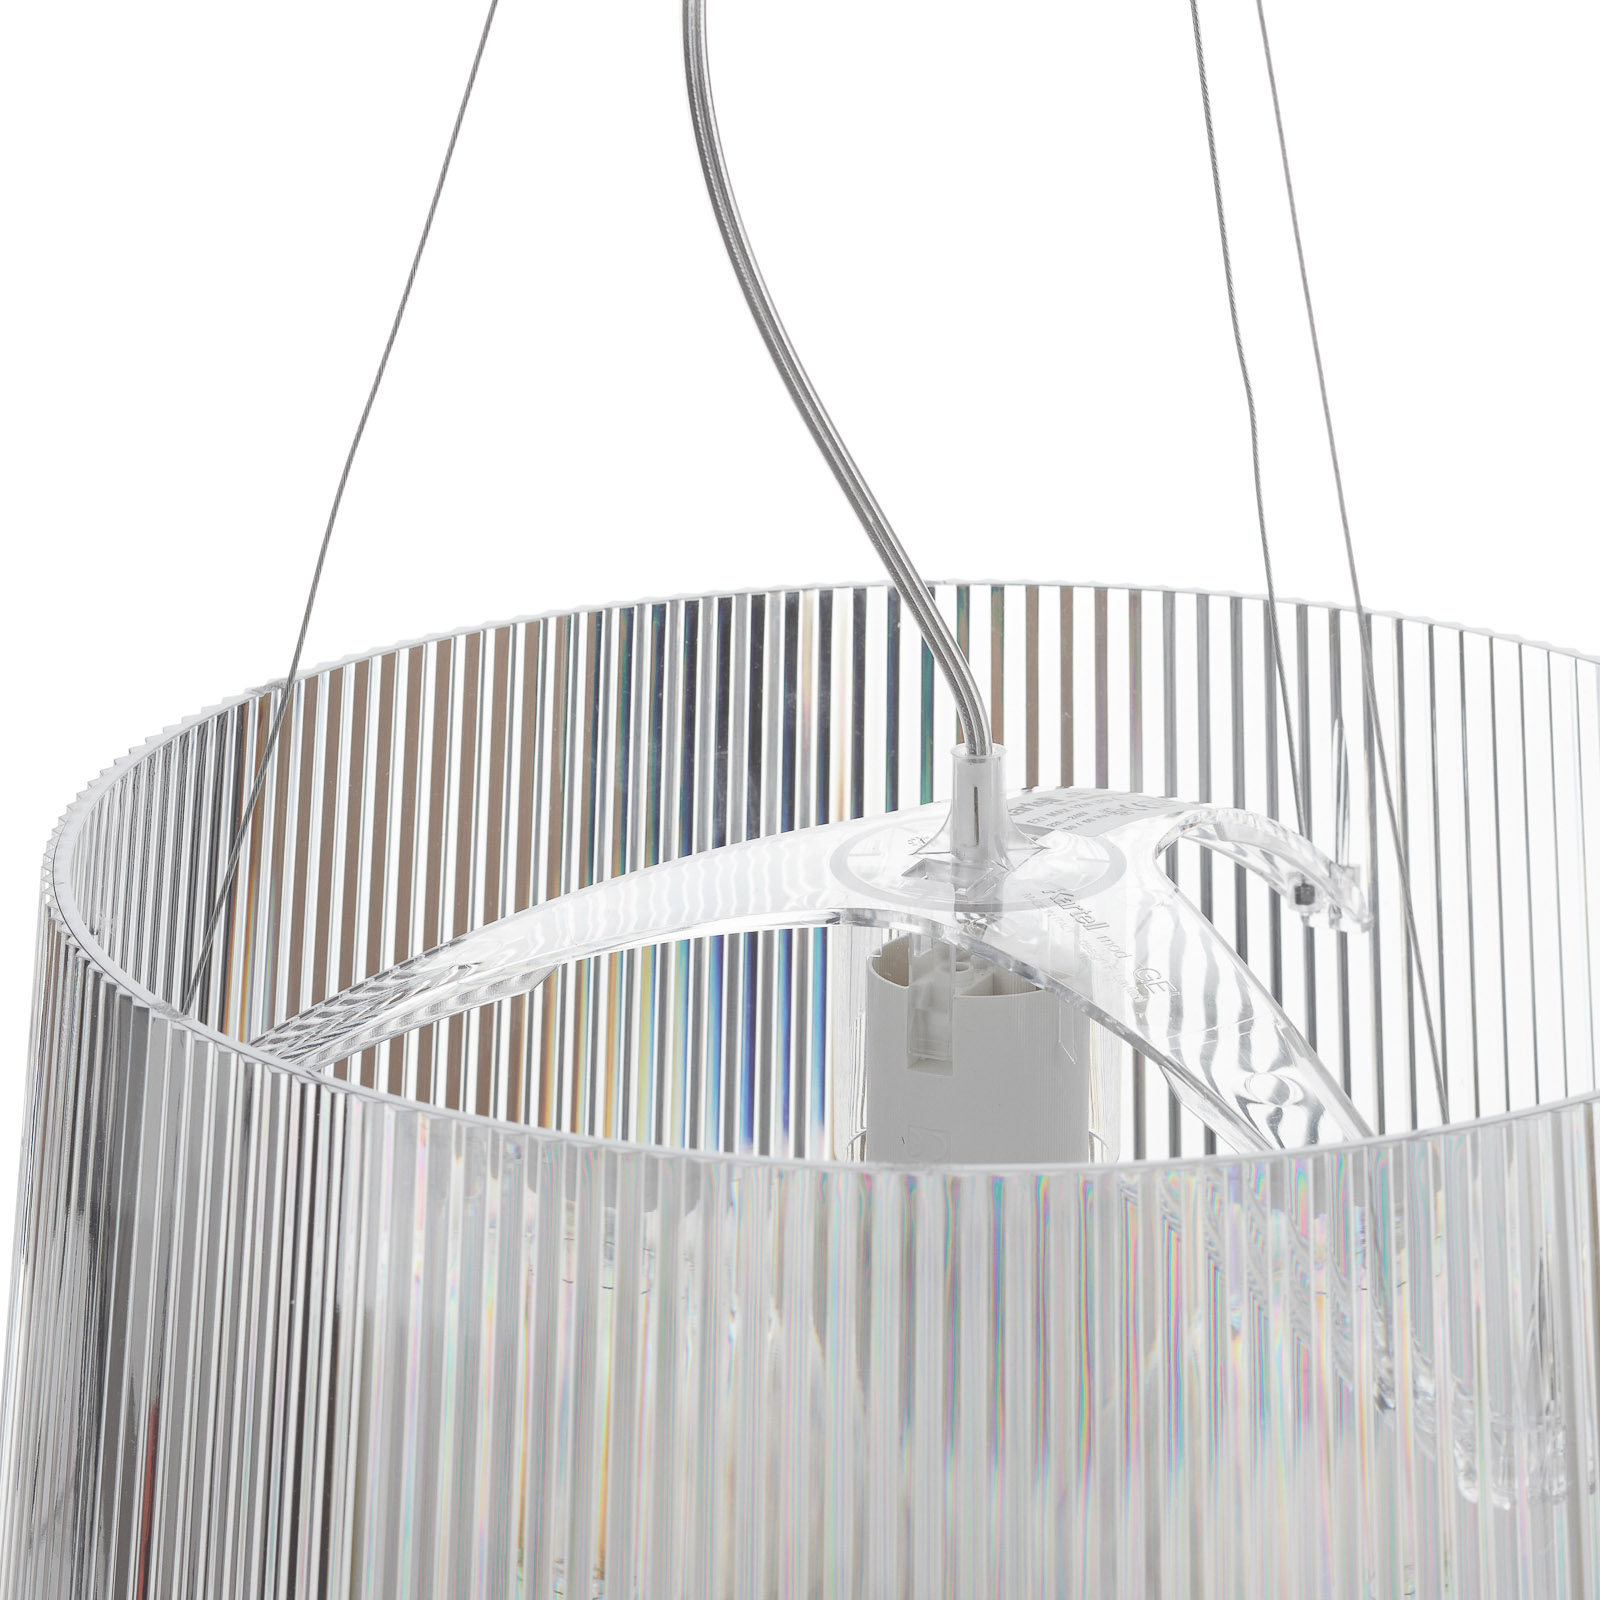 Kartell Gè - LED pendant lamp, transparent